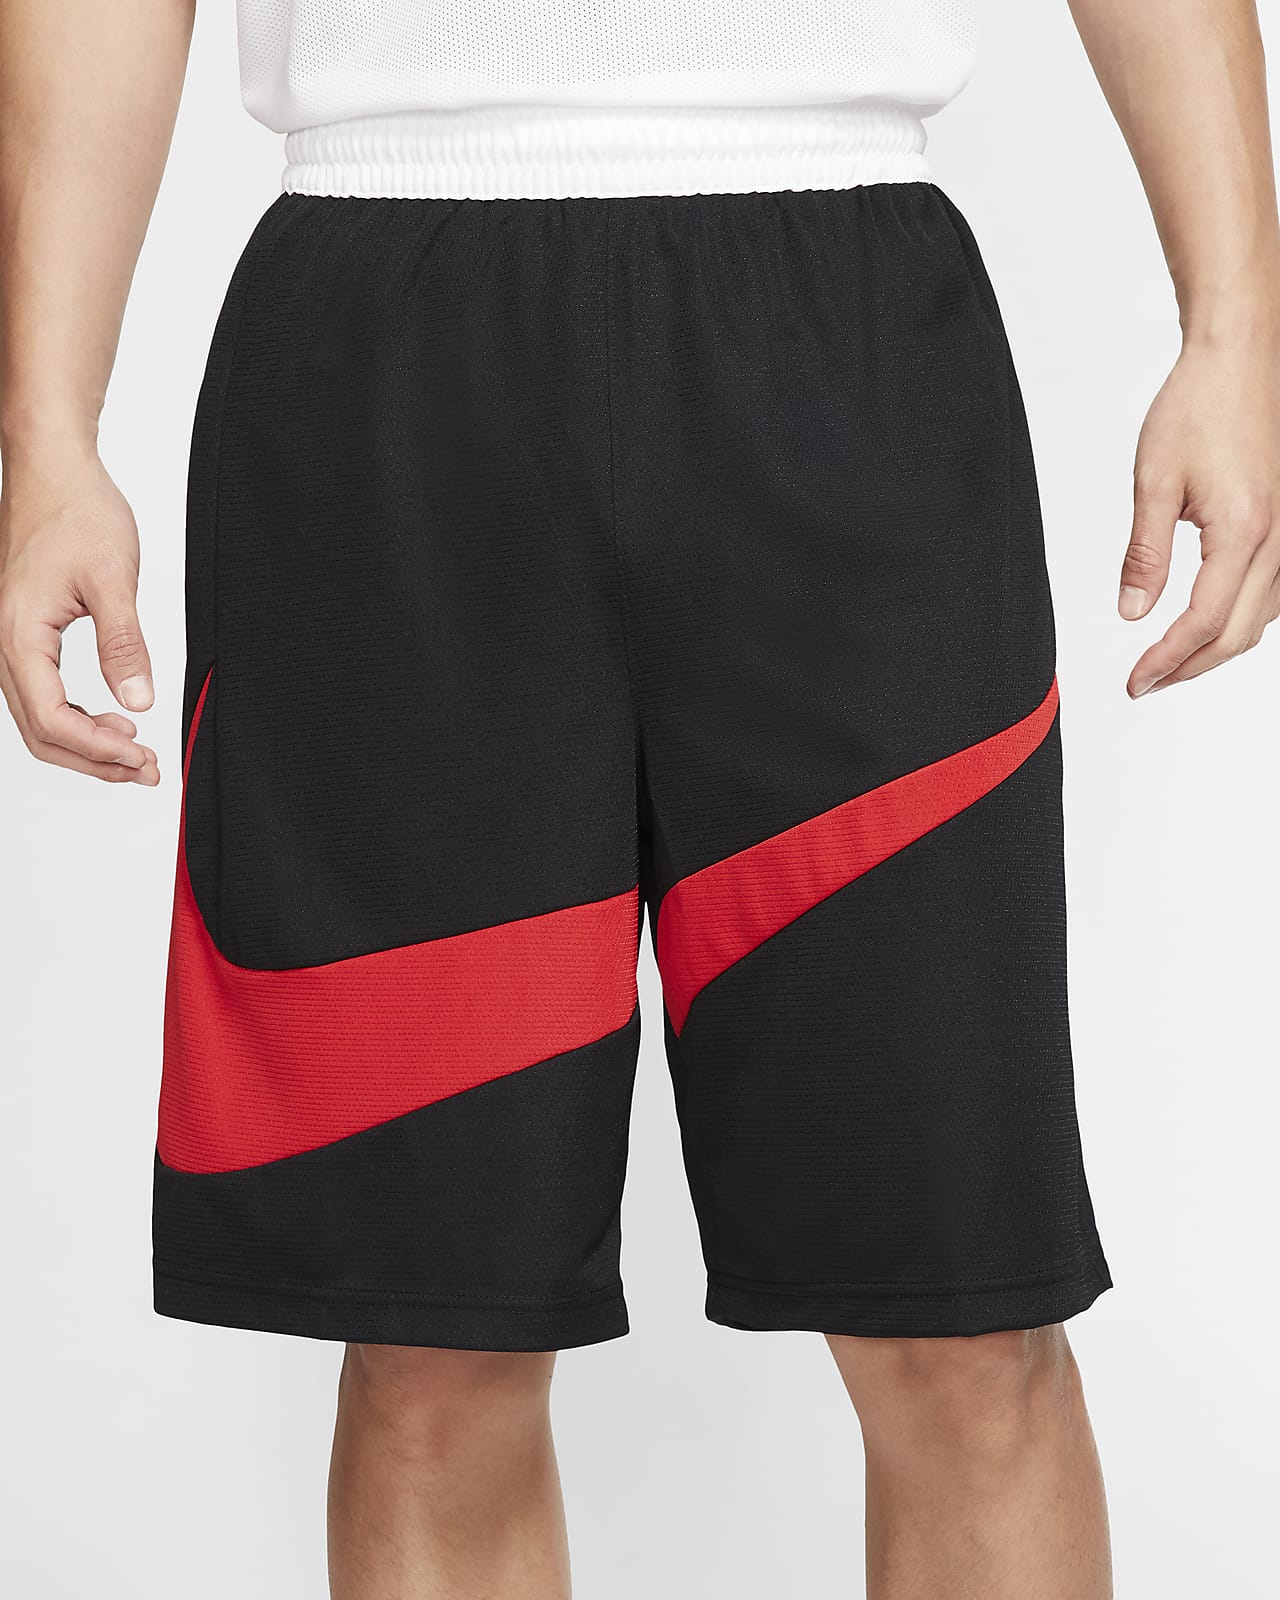 【超新作】 Nike Dri-Fit basketball shorts. XL size hirota.com.br